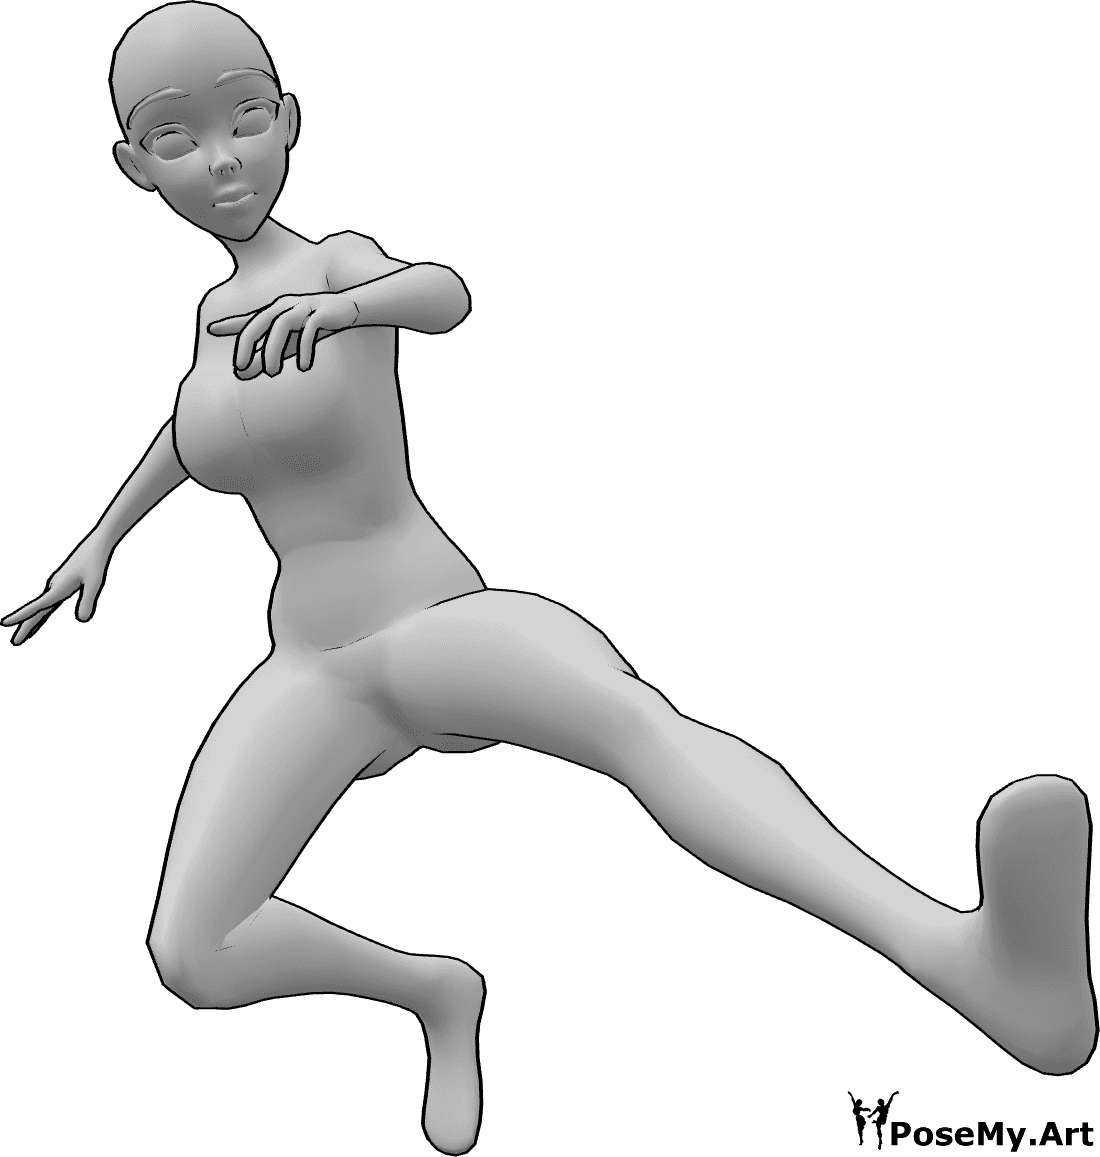 Referência de poses- Pose de pontapé dinâmica de anime - Mulher anime salta e dá pontapés no ar com o pé esquerdo, pose de pontapé dinâmica